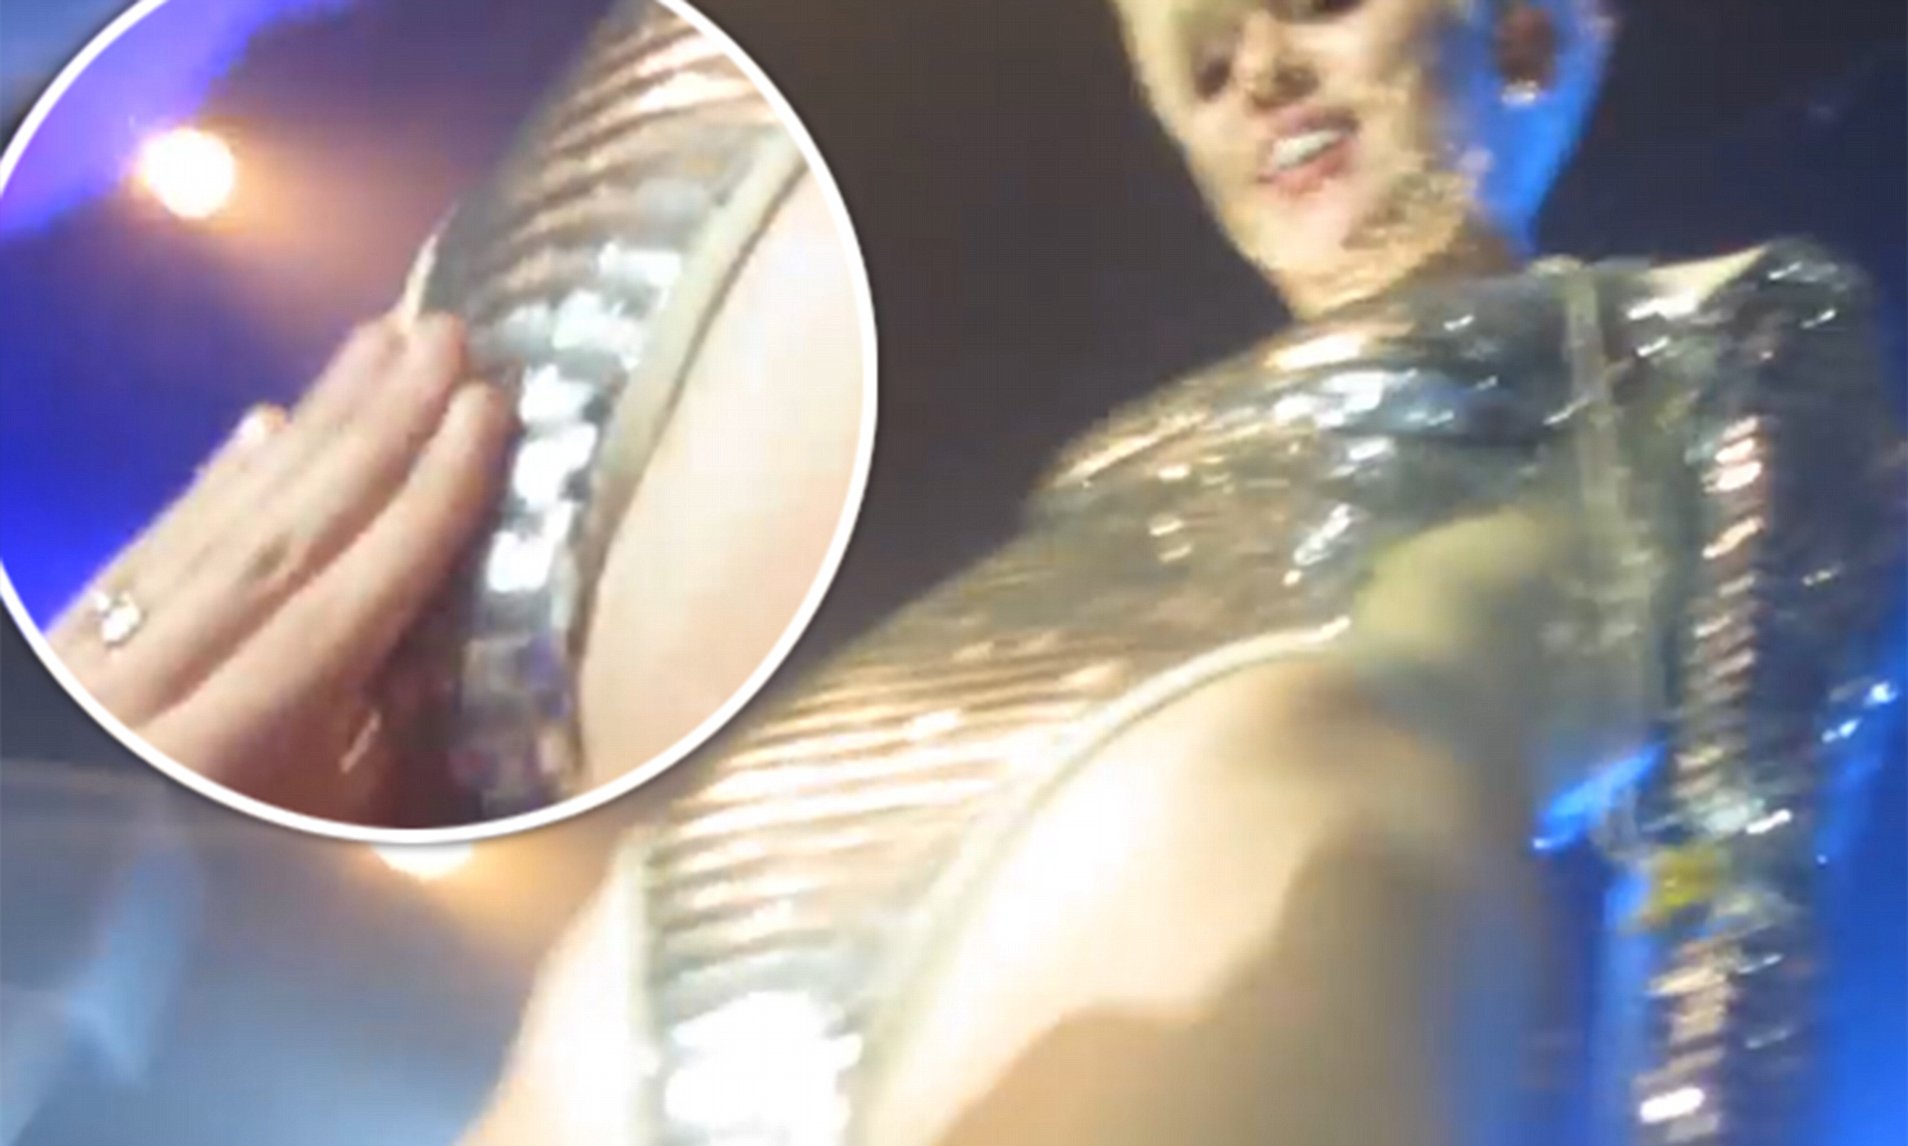 CuÃ¡les son los momentos mÃ¡s escandalosos de Miley Cyrus en los escenarios  en vivo? - Quora